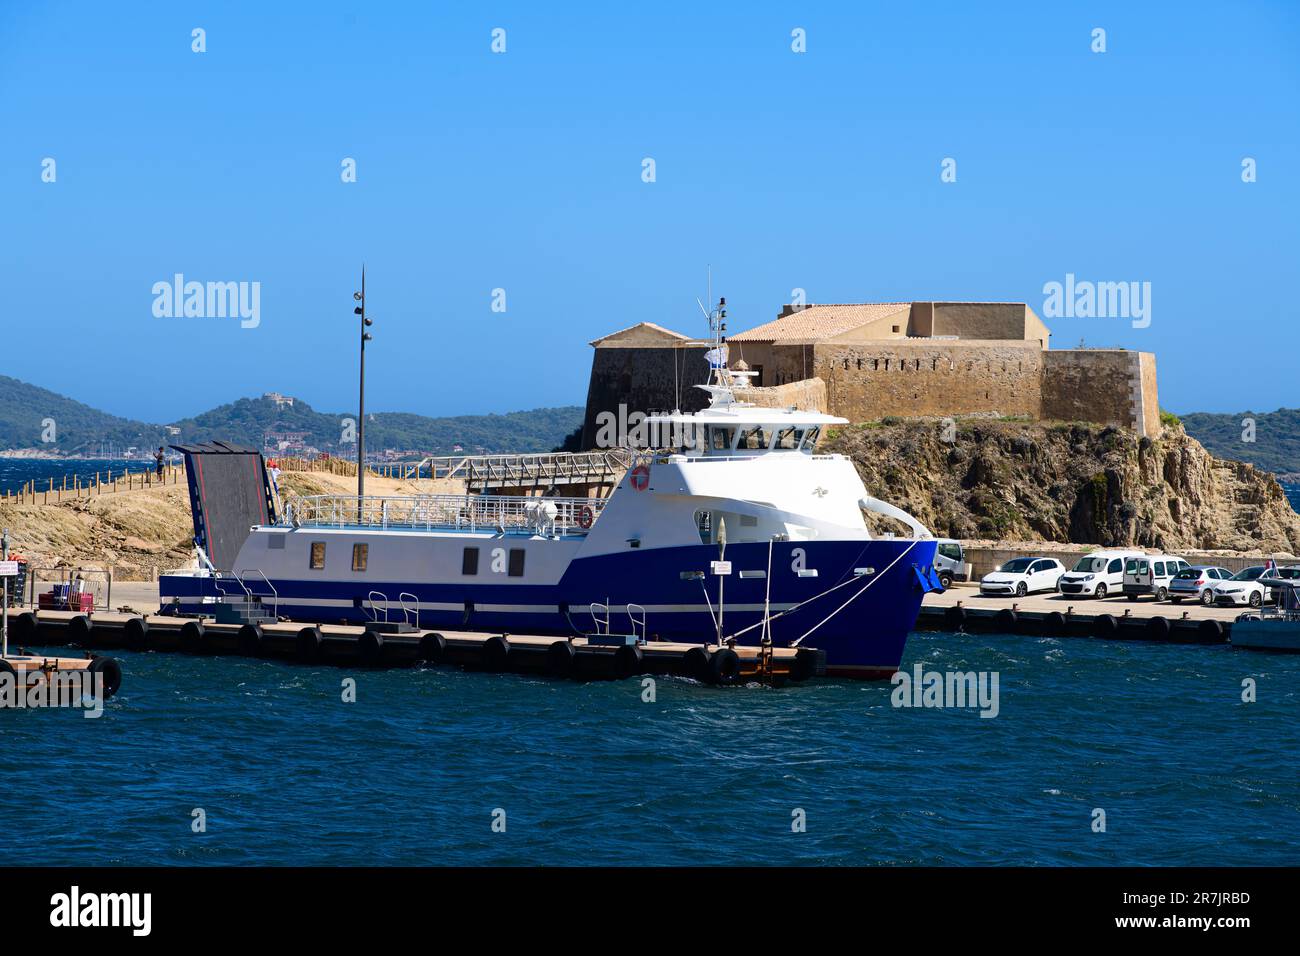 Ein majestätisches Boot liegt im Hafen vor Anker, sein starkes und robustes Schiff ist ein Transportmittel, das zum klaren blauen Meer unter La Tour Fondues fährt Stockfoto